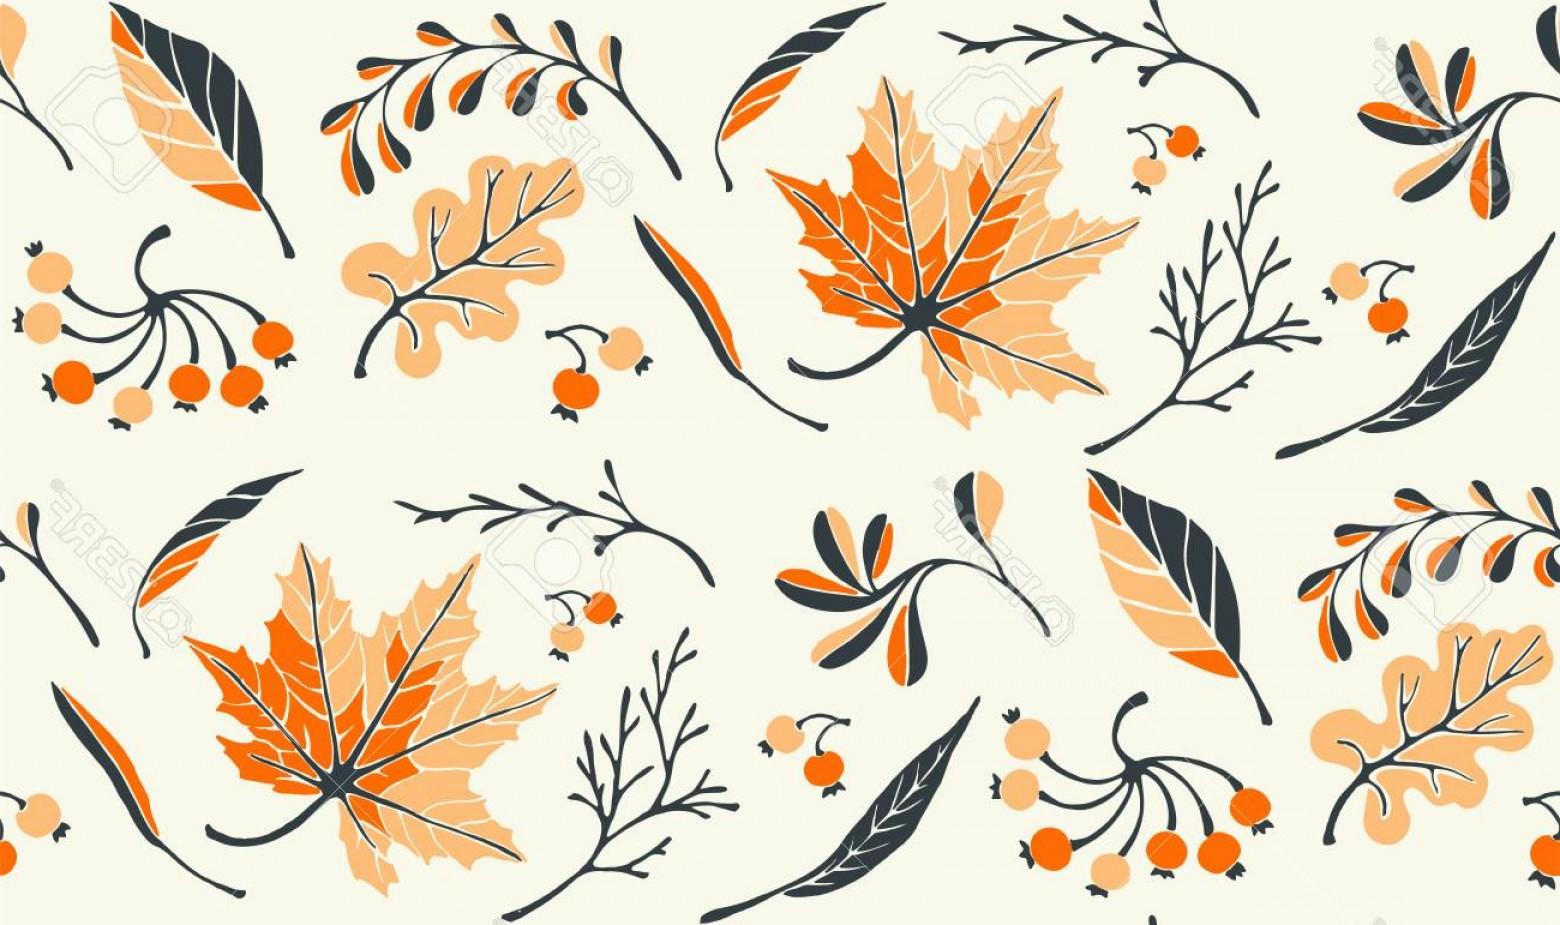 Photostock Vector Autumn Leaves In Cartoon Style Seamless